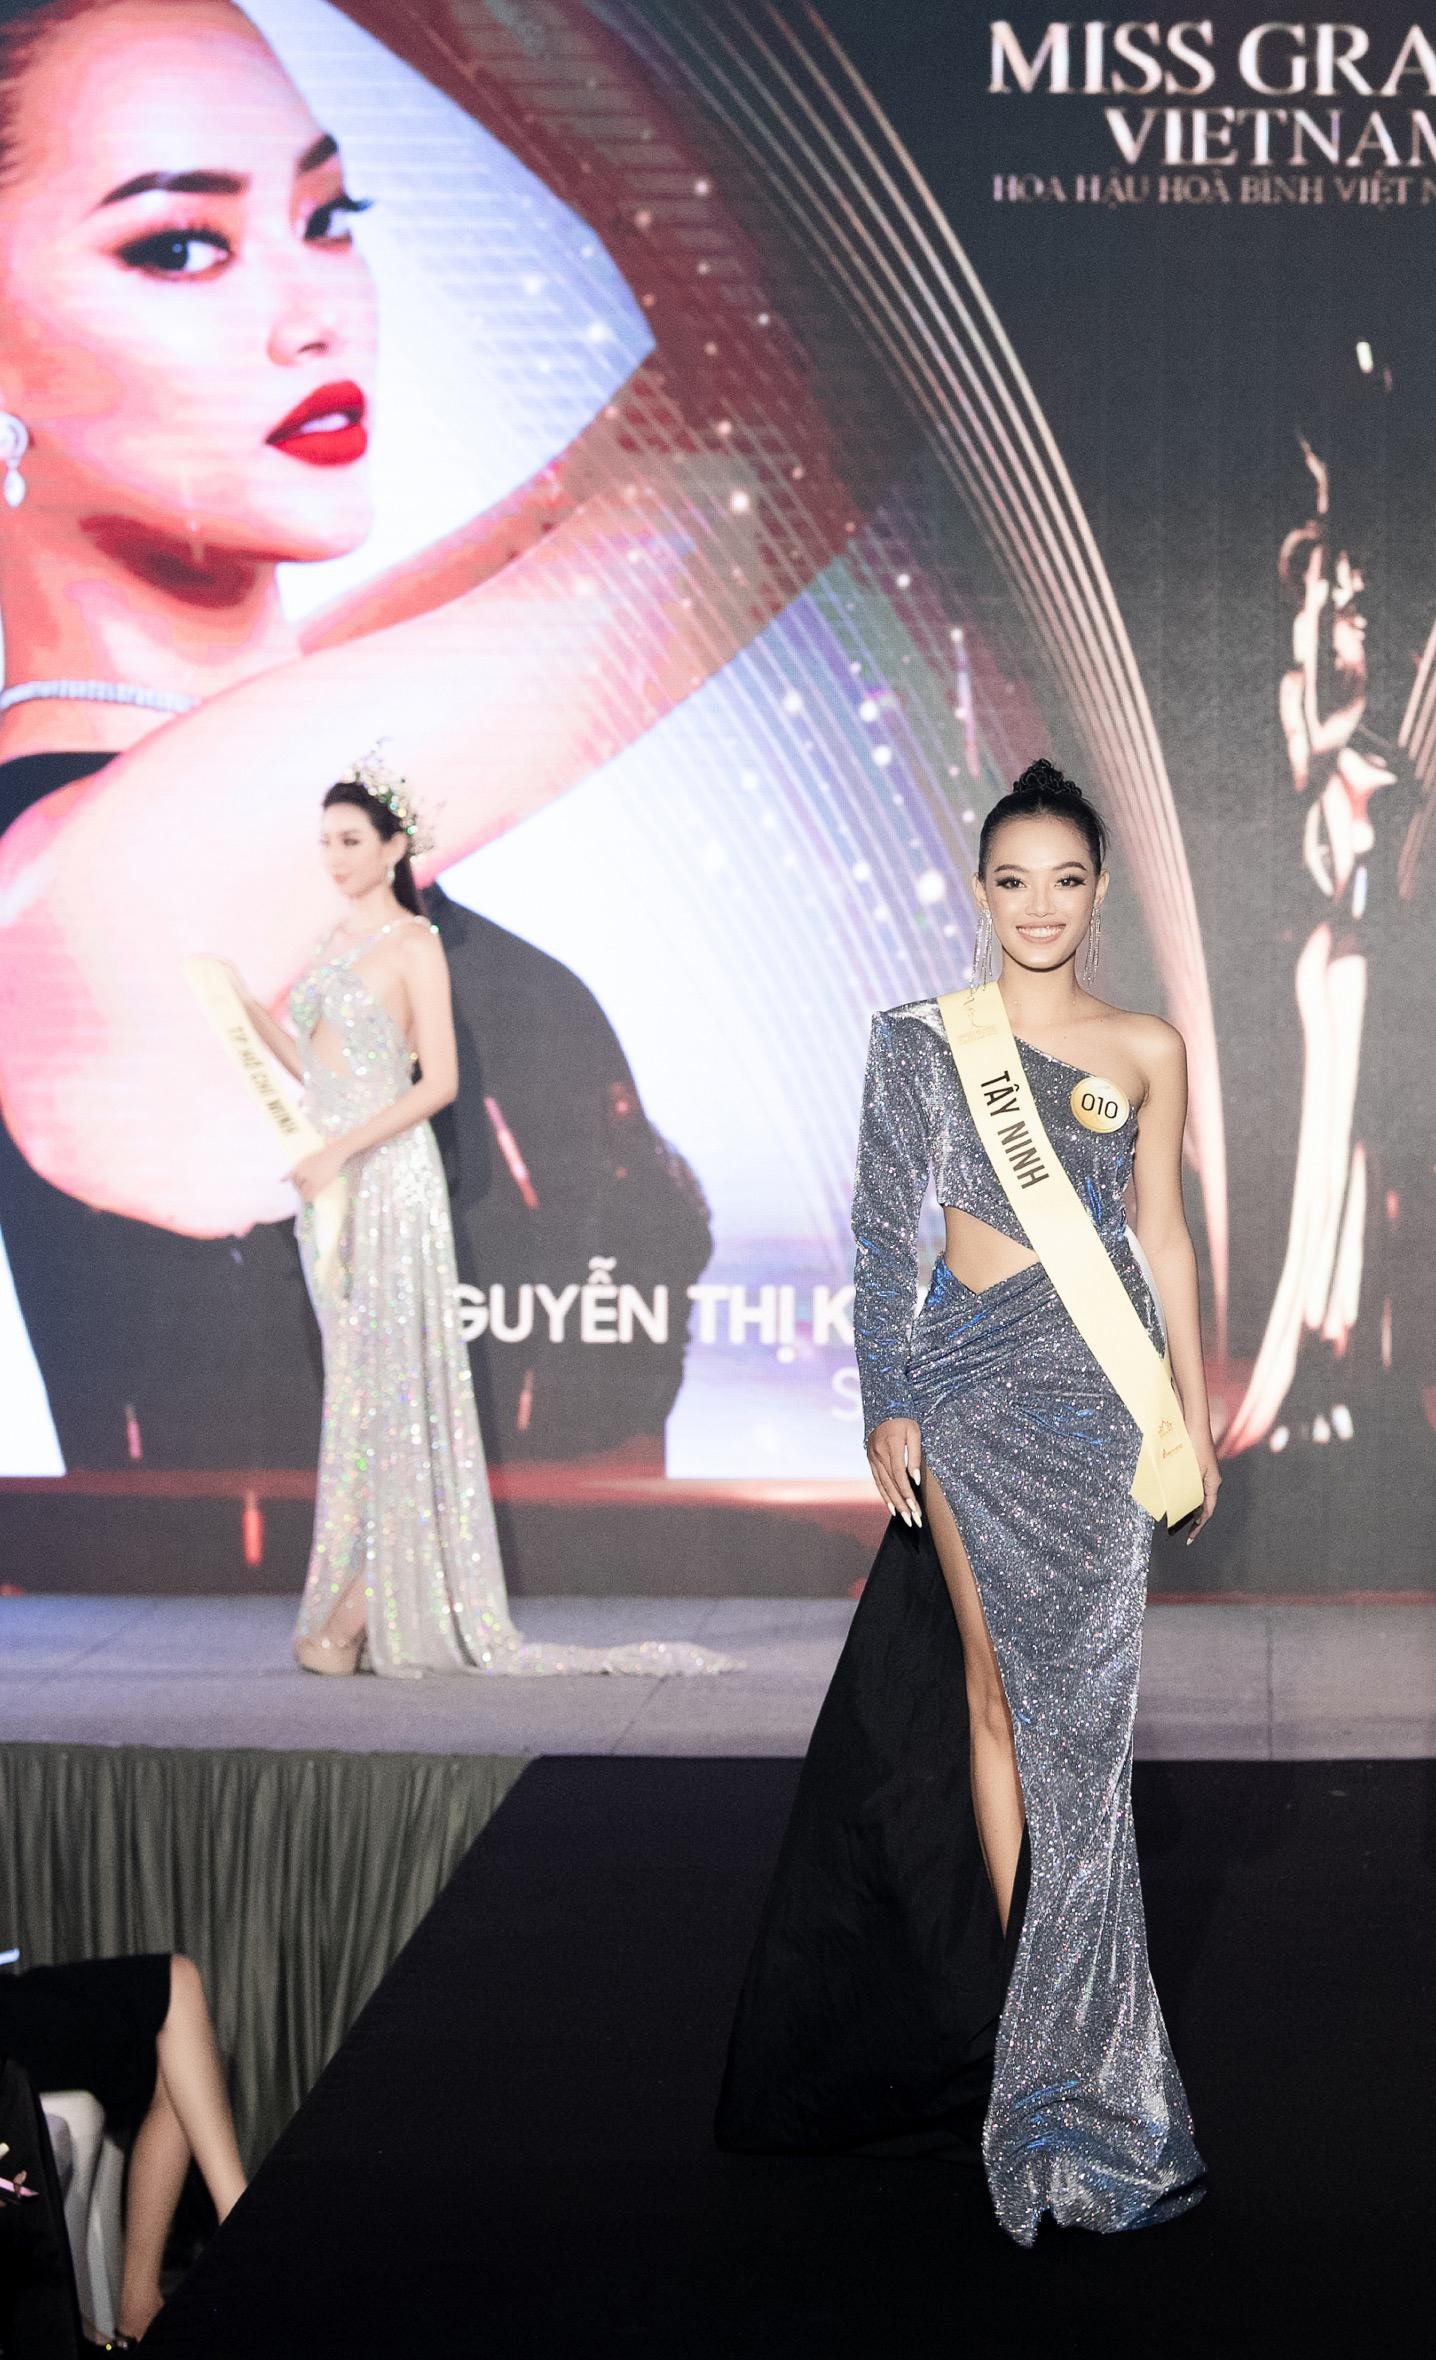 Mai Ngô, Quỳnh Châu tung chiêu catwalk độc đáo tại lễ nhận sash của Miss Grand Vietnam 2022 - Ảnh 11.